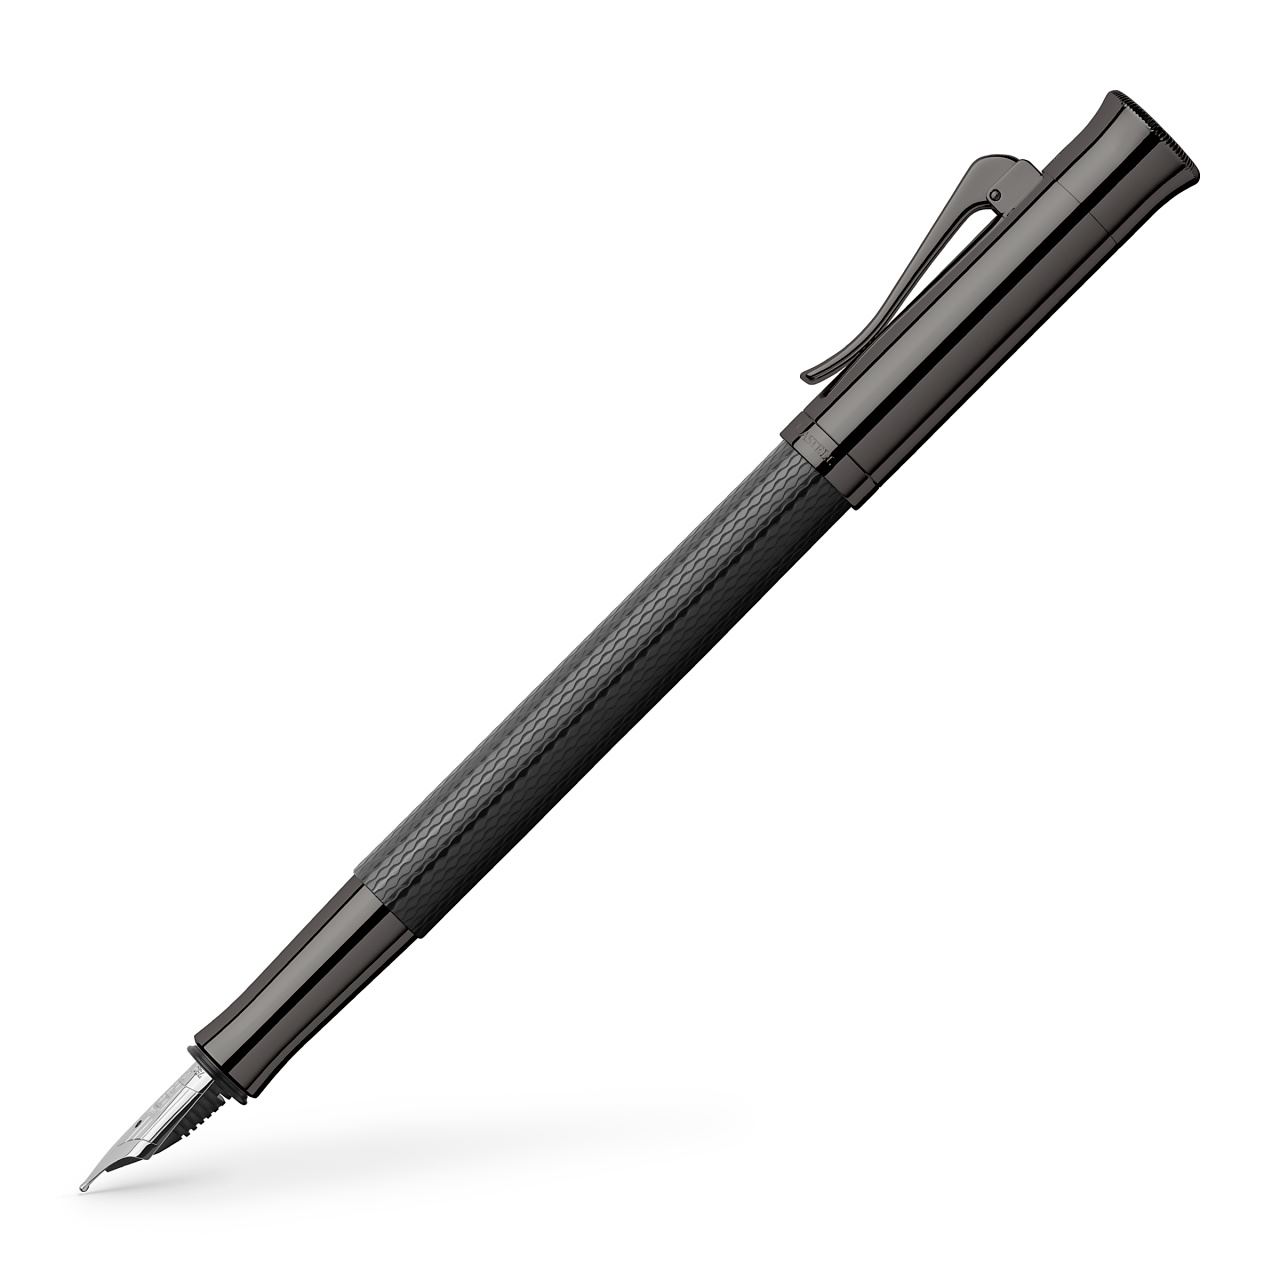 Graf-von-Faber-Castell - Fountain pen Guilloche Black Edition F